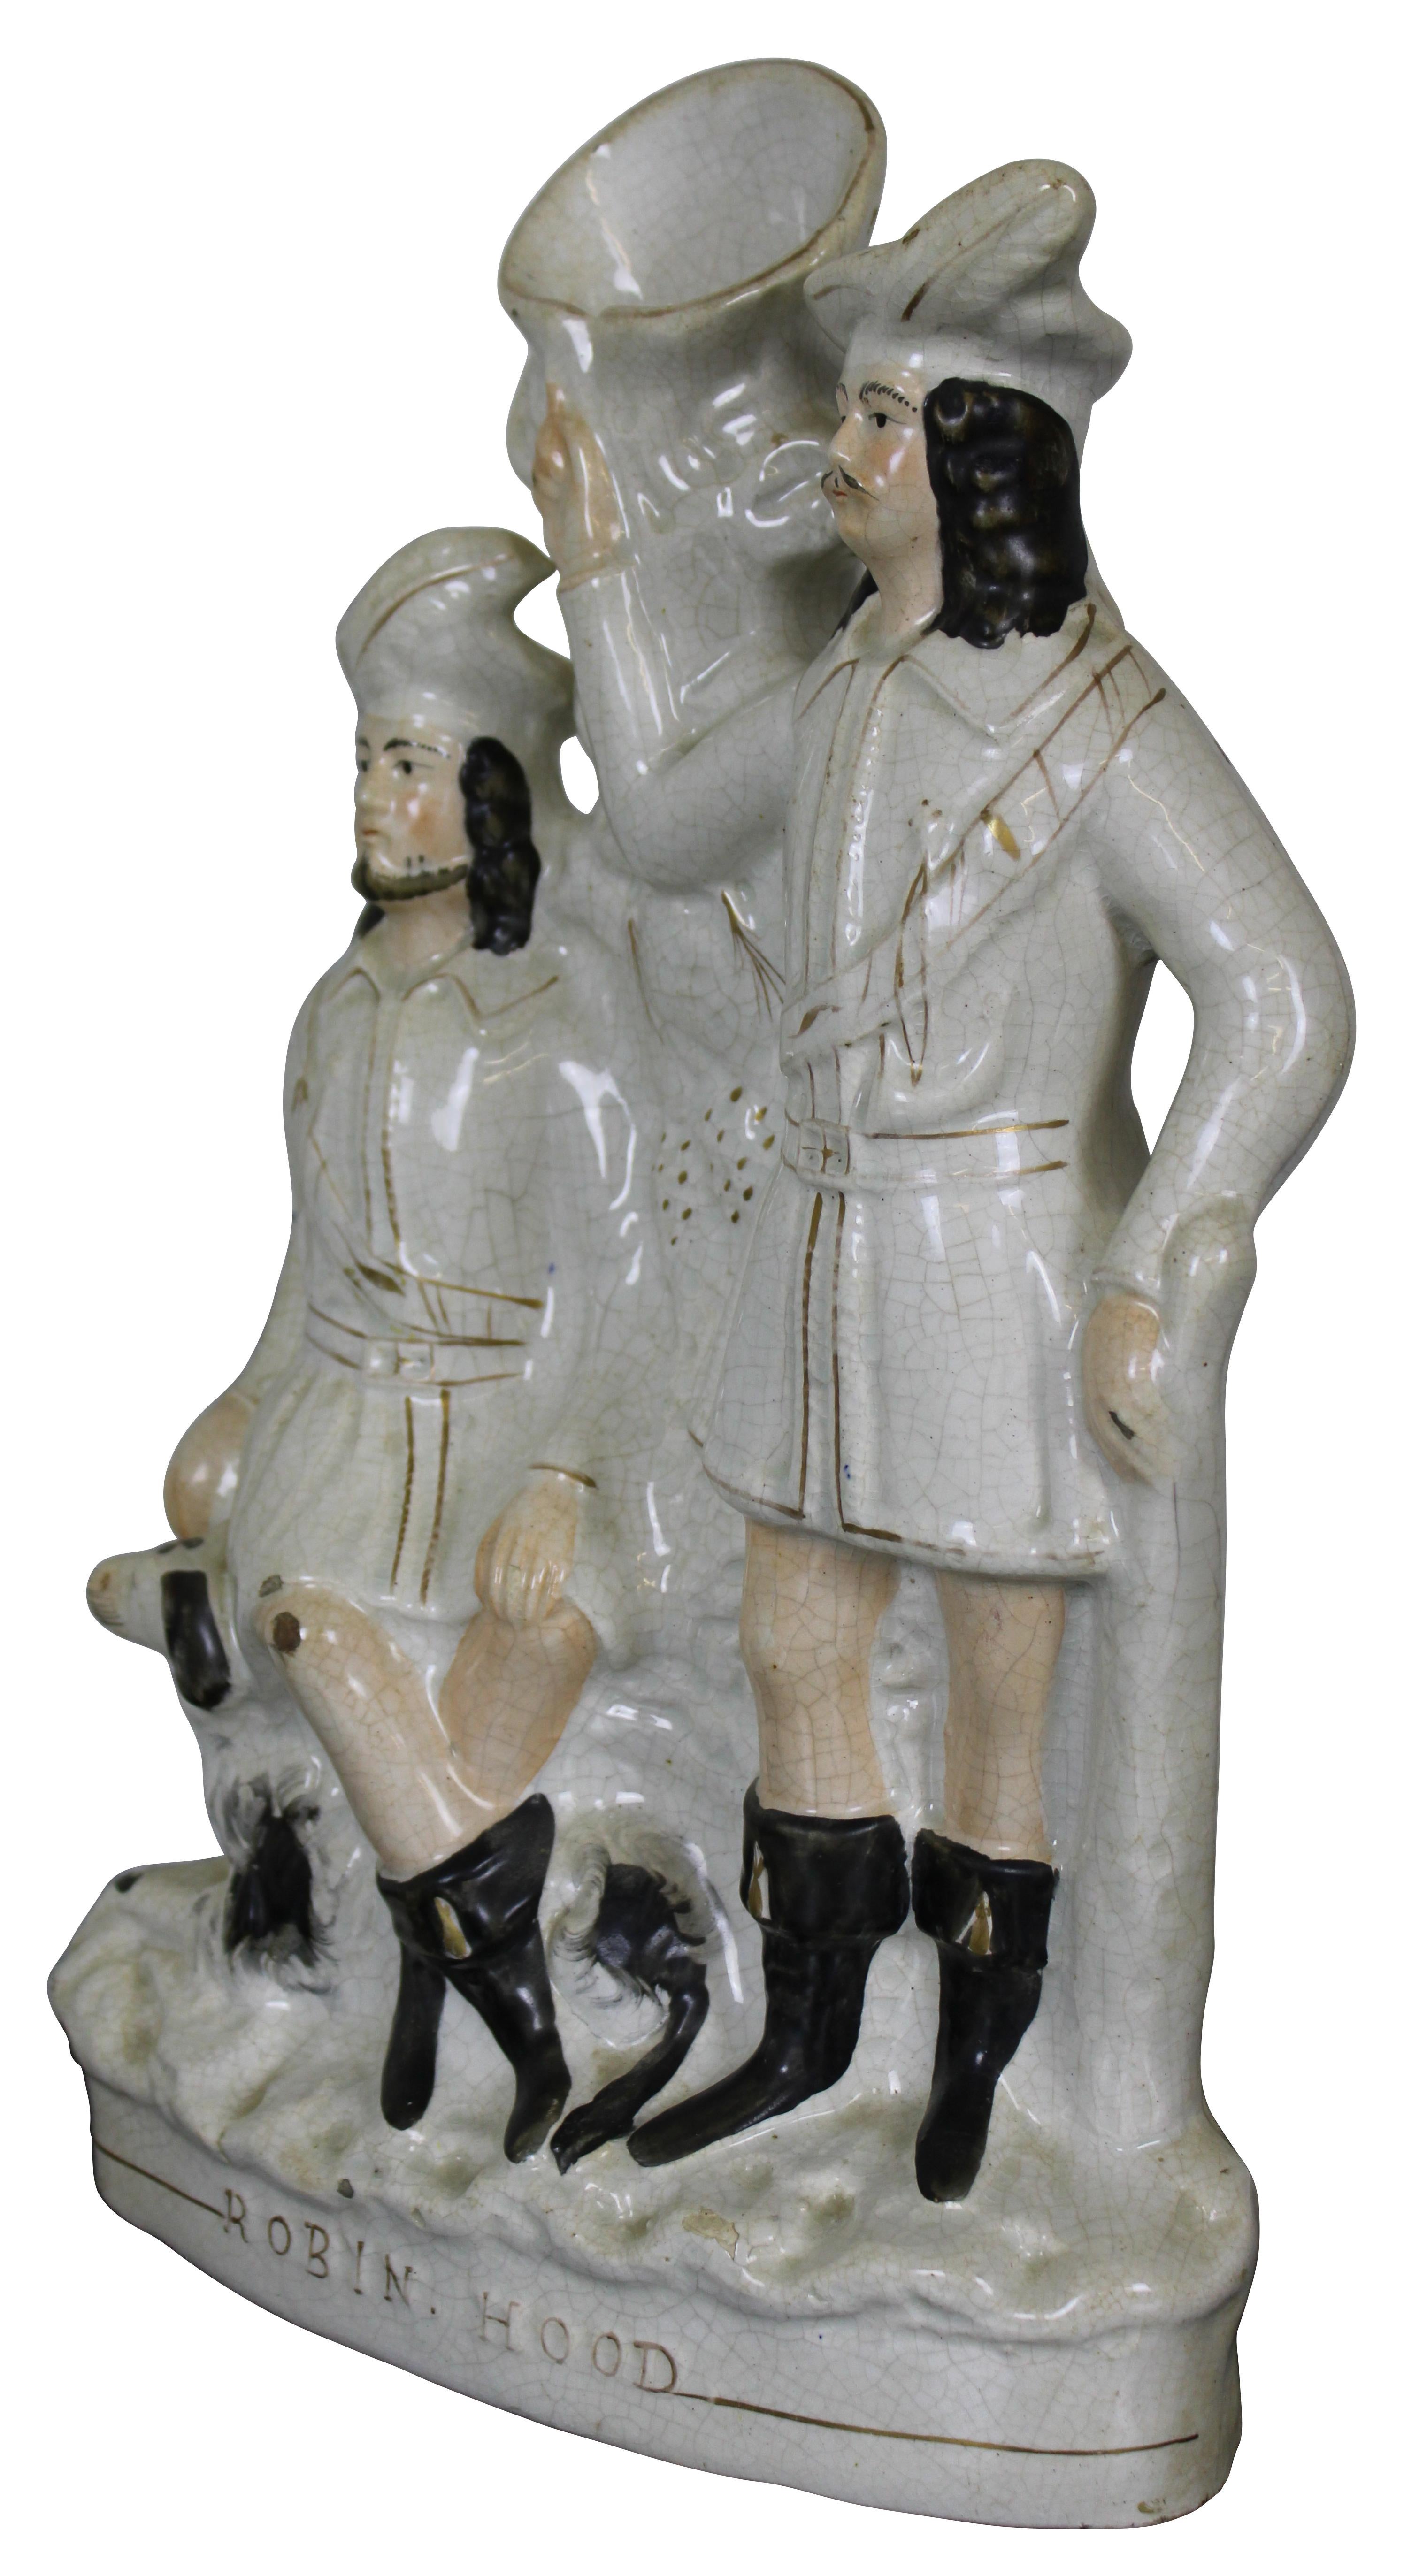 Vase en porcelaine anglaise du Staffordshire, datant du milieu du XIXe siècle, représentant les héros populaires Robin des Bois et Petit Jean avec un chien. Mesure : 15